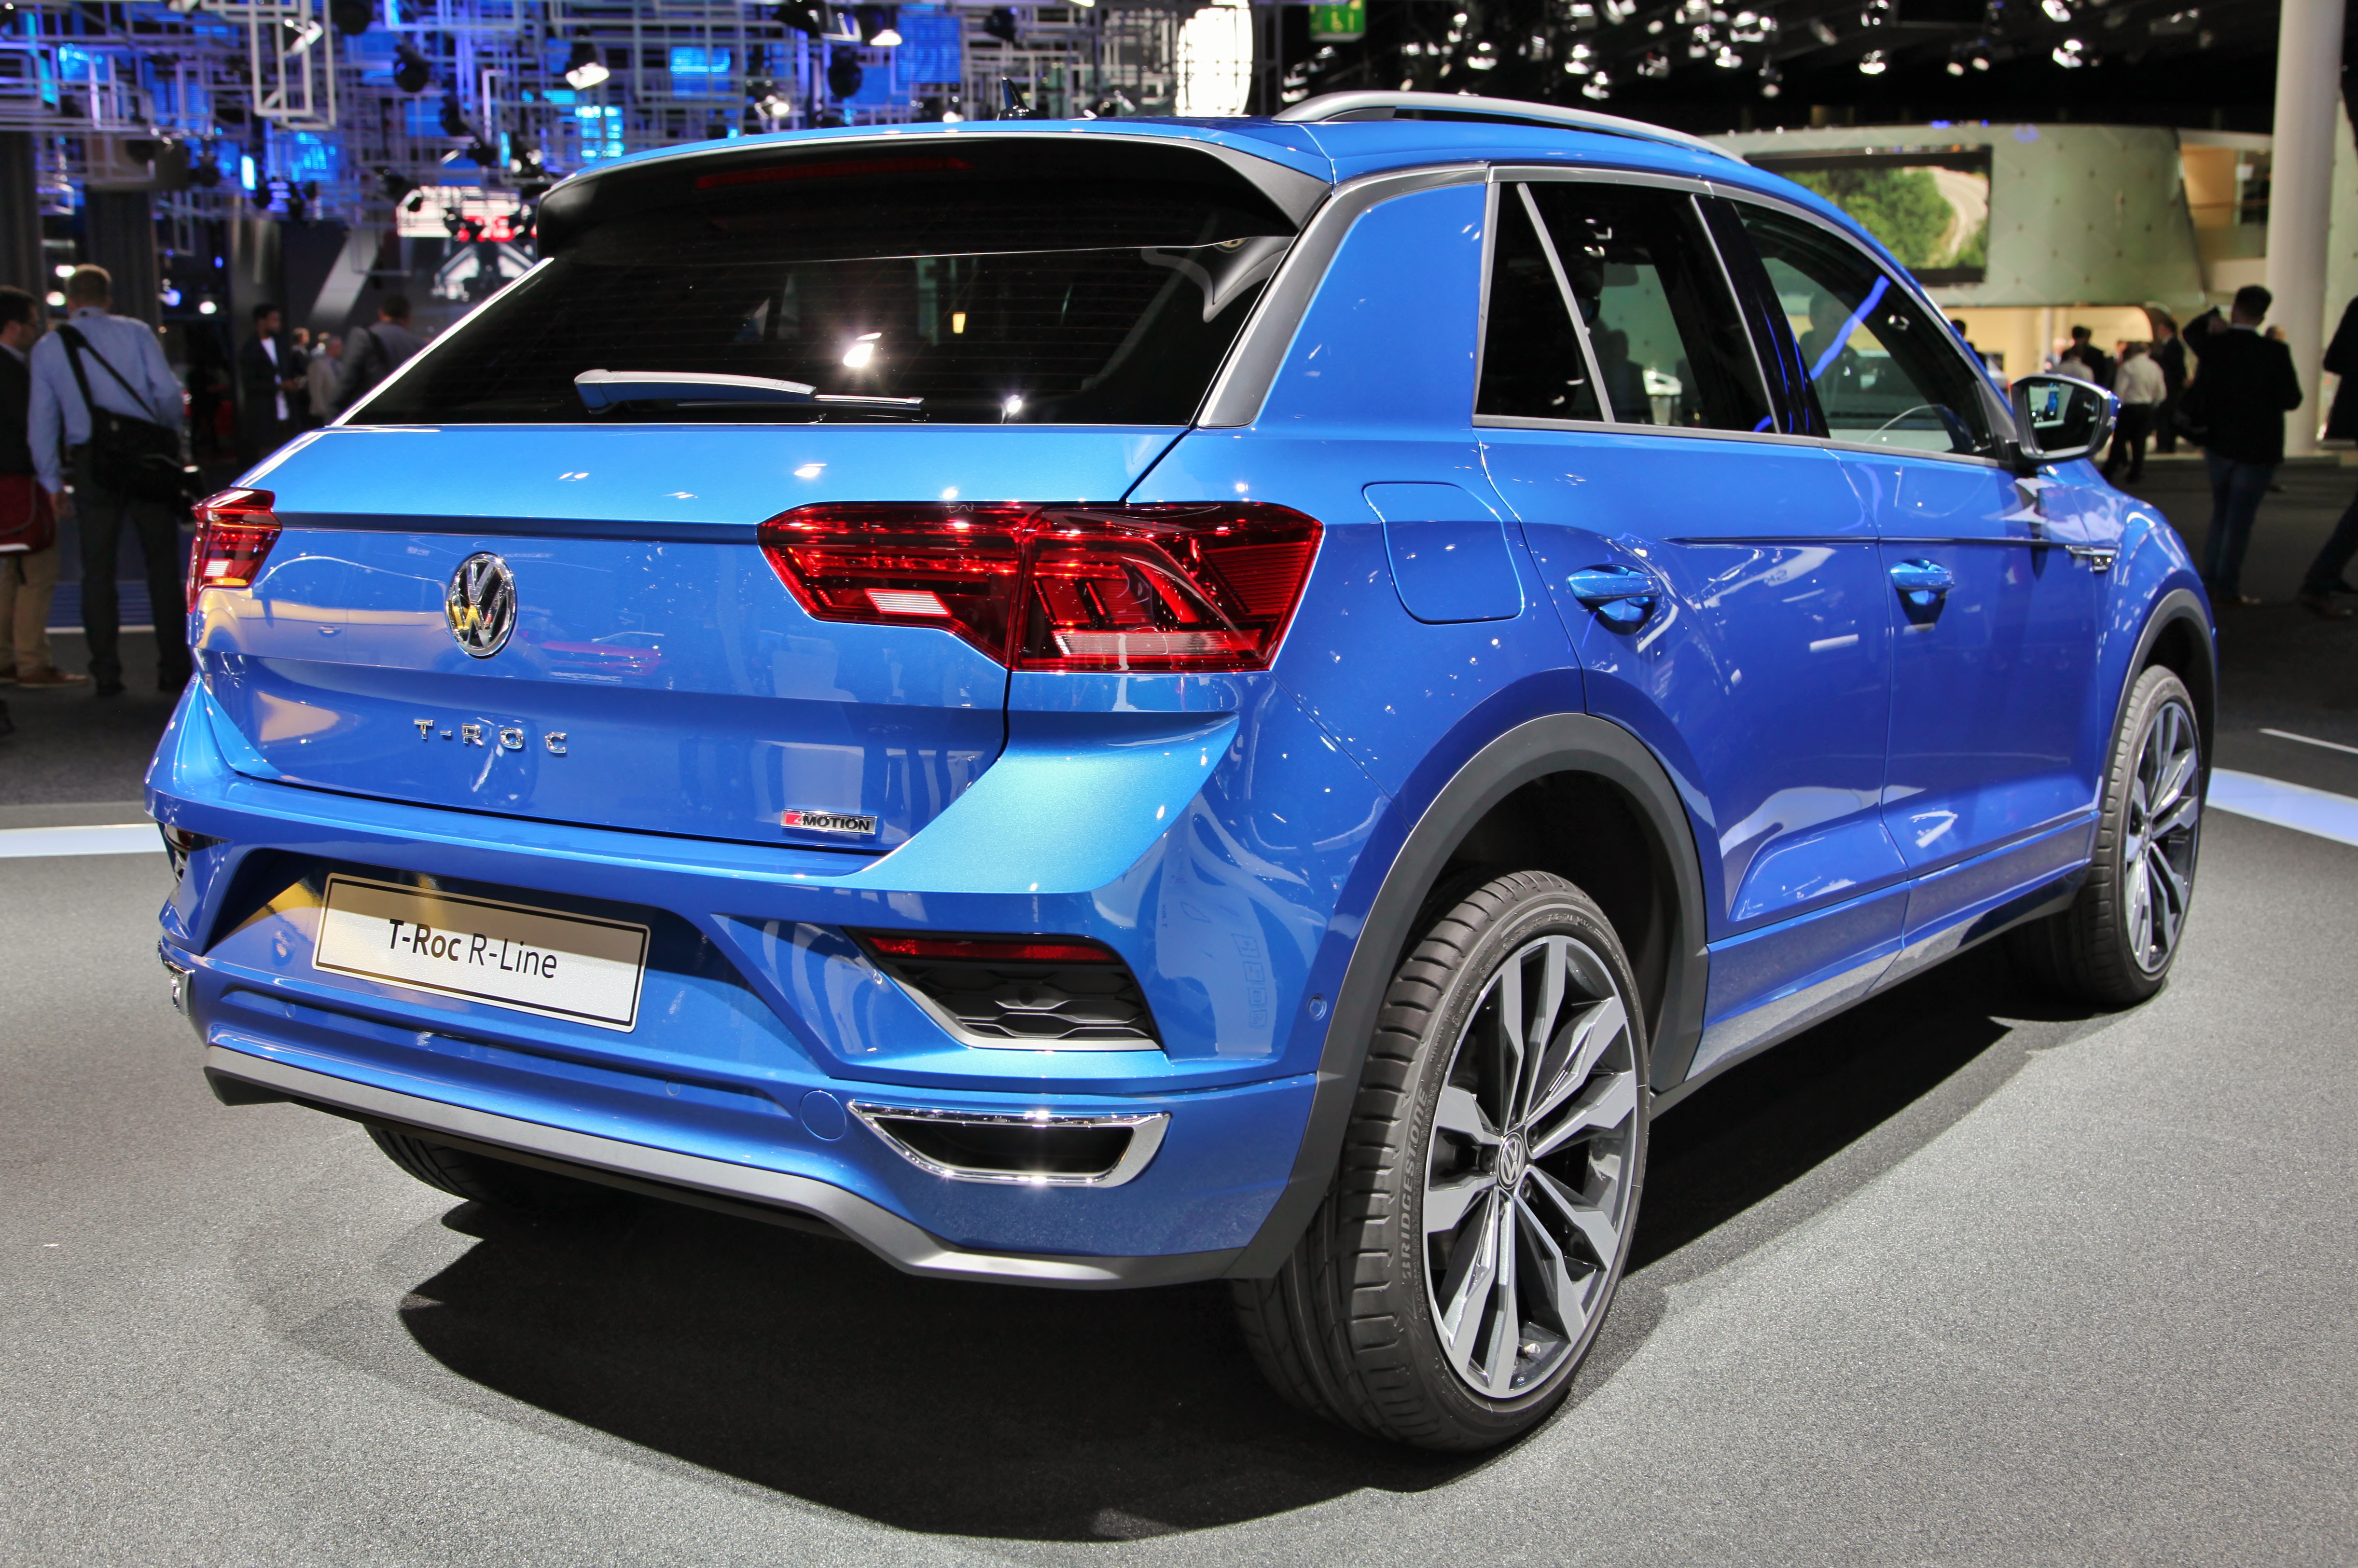 Volkswagen T-Roc hd specifications